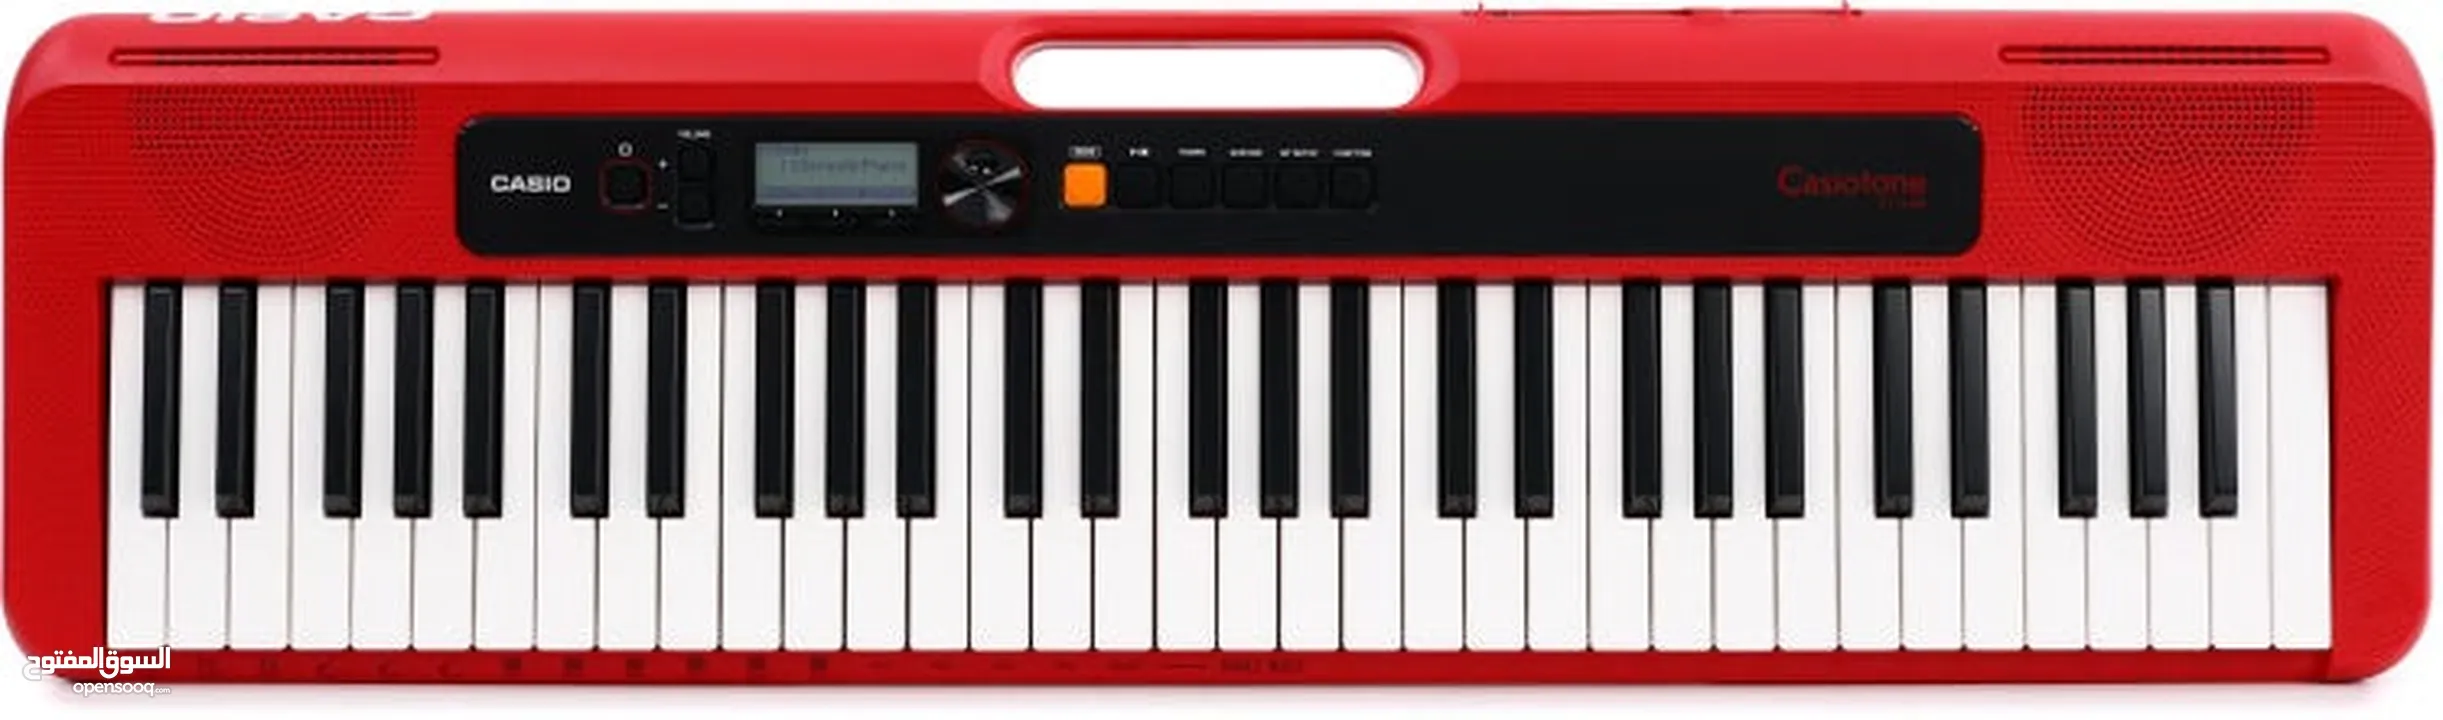 بيانو نوع كاسيو CASIO للبيع CT-S200